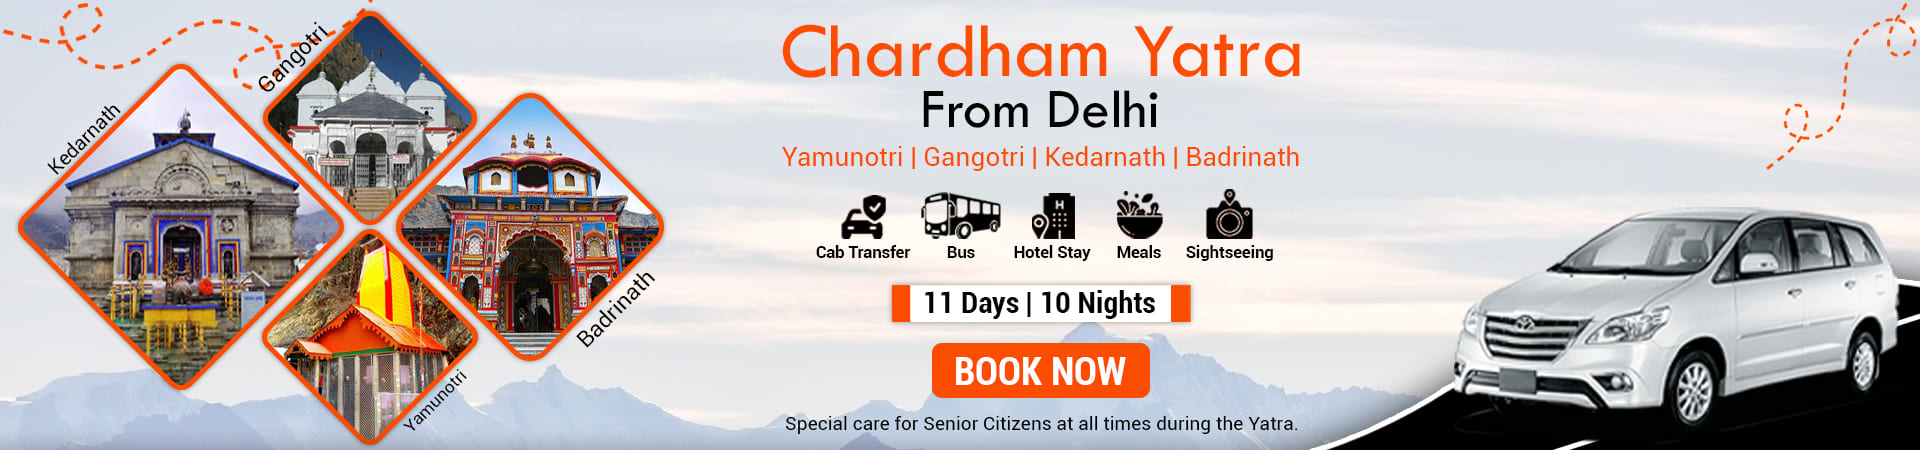 Chardham yatra from delhi by car